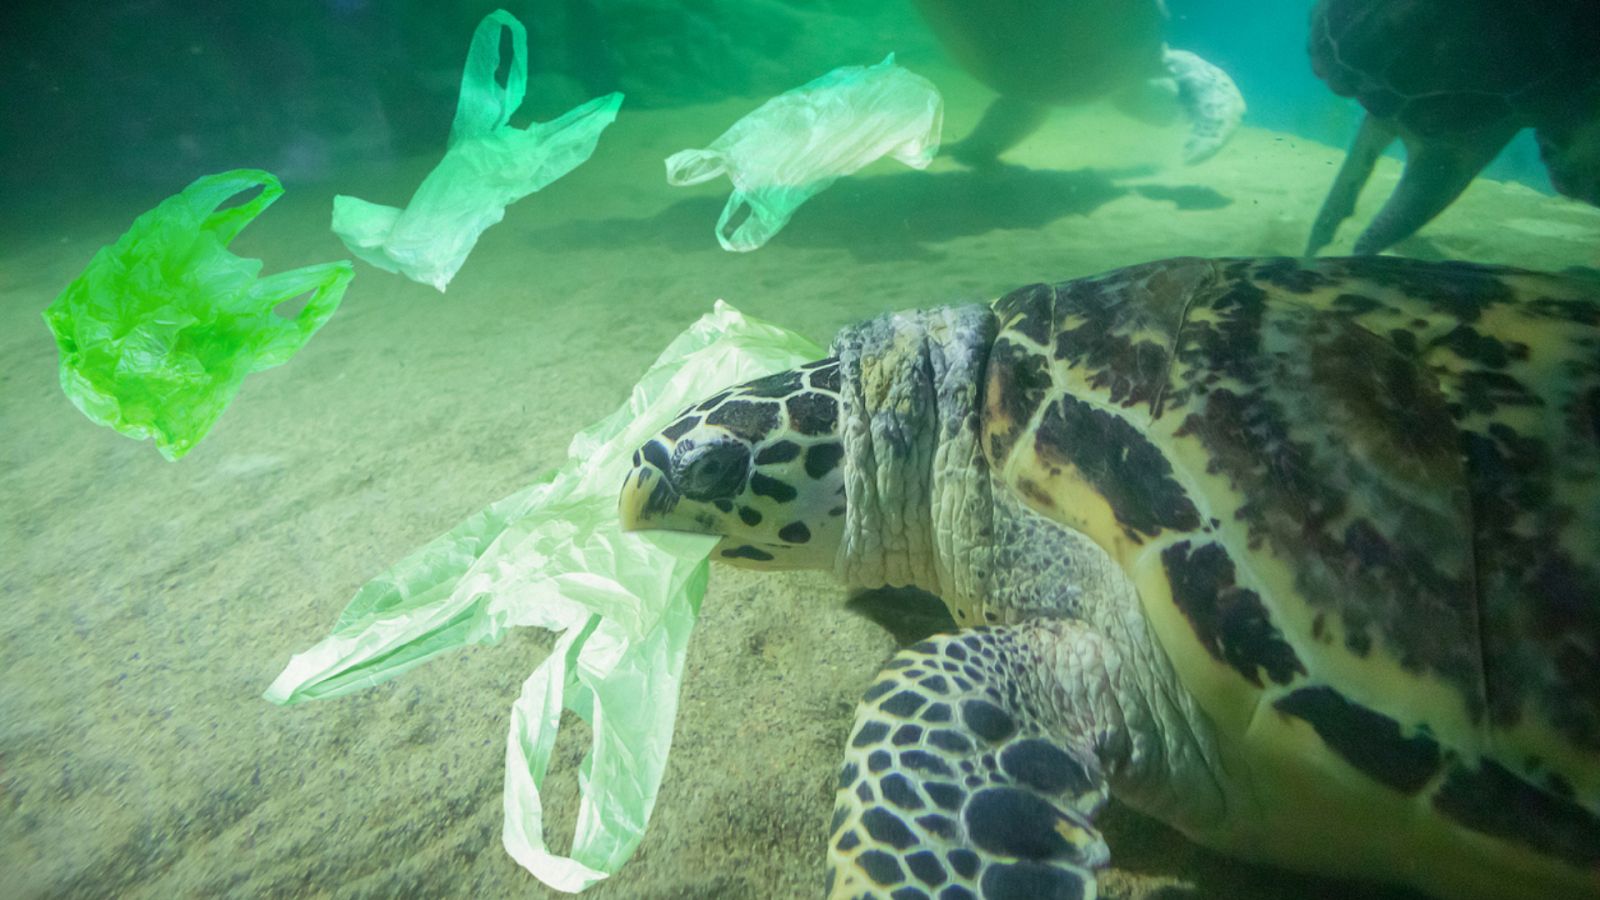 Aquí la Tierra - El plástico, contaminando tierra, aire, mar y cuerpos humanos